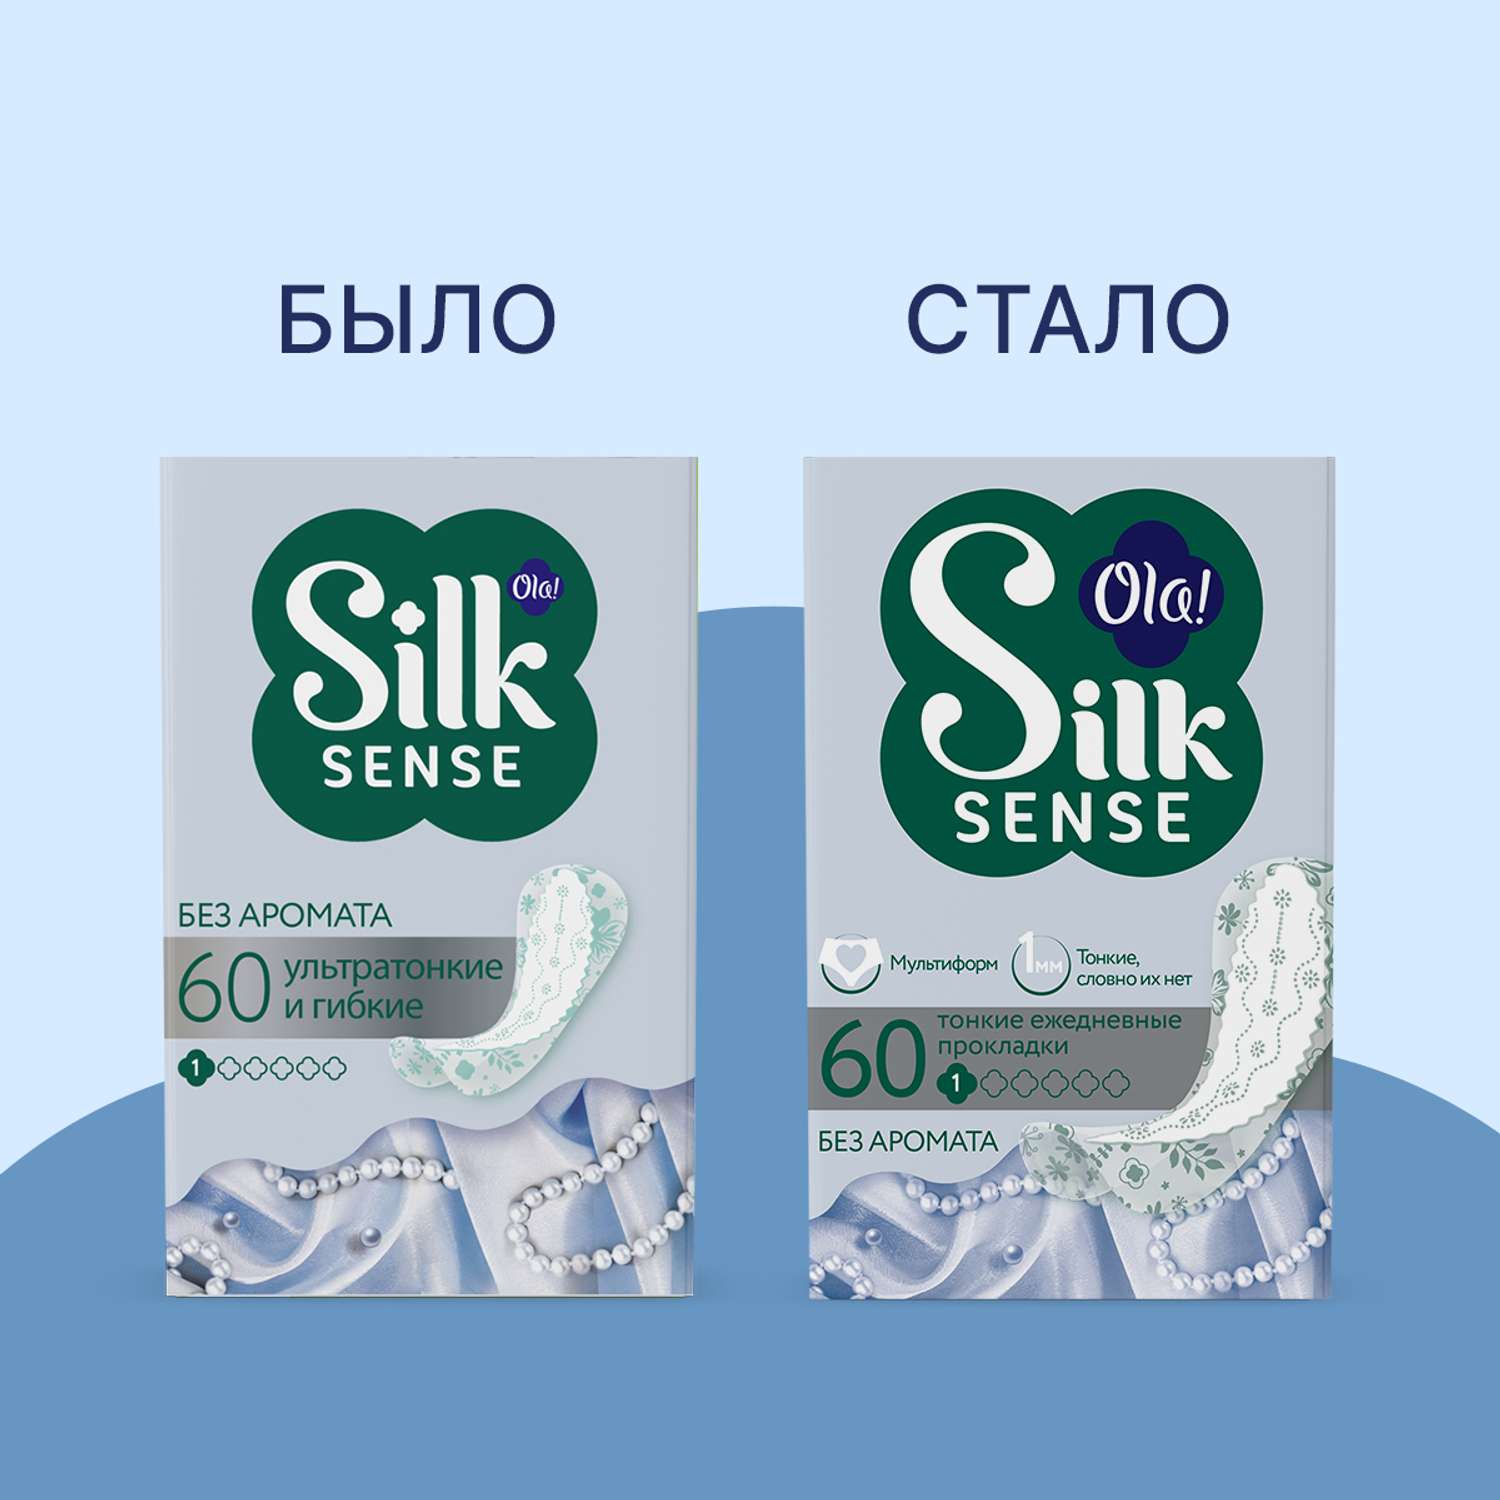 Ежедневные прокладки Ola! Silk Sense Light ежедневные тонкие стринг-мультиформ 60x3 уп.180 - фото 3